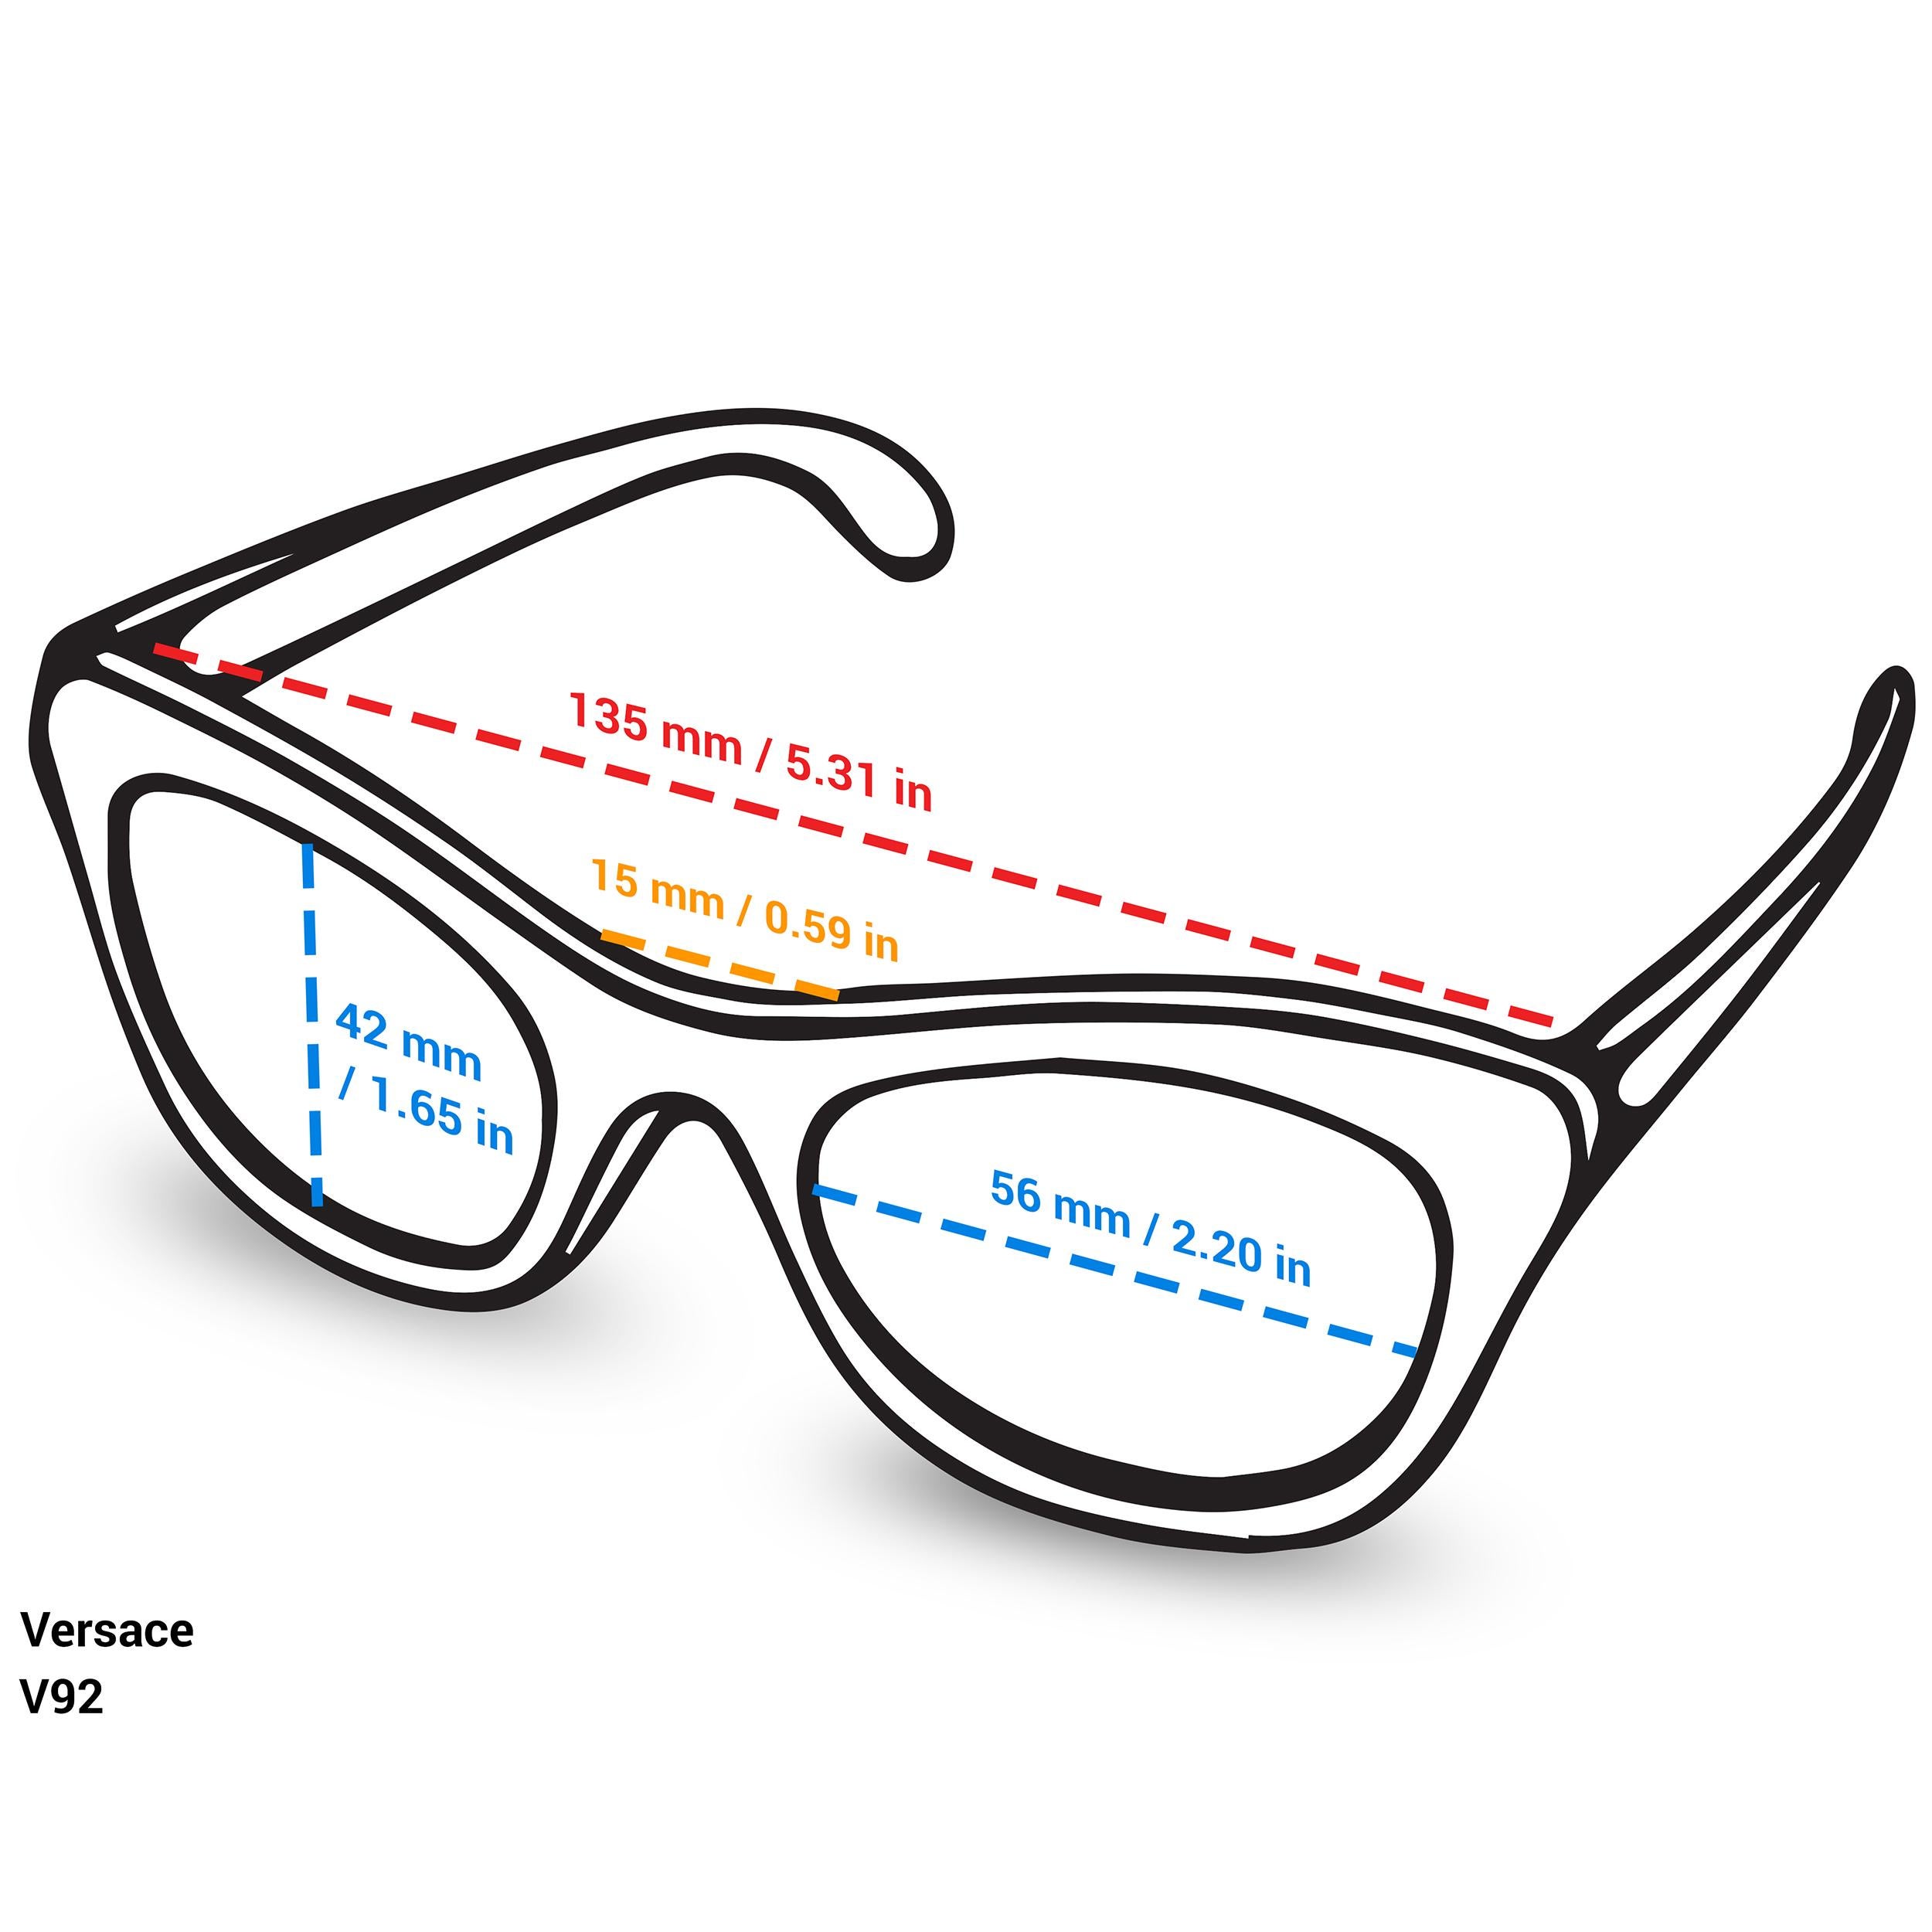 versace sunglasses size chart